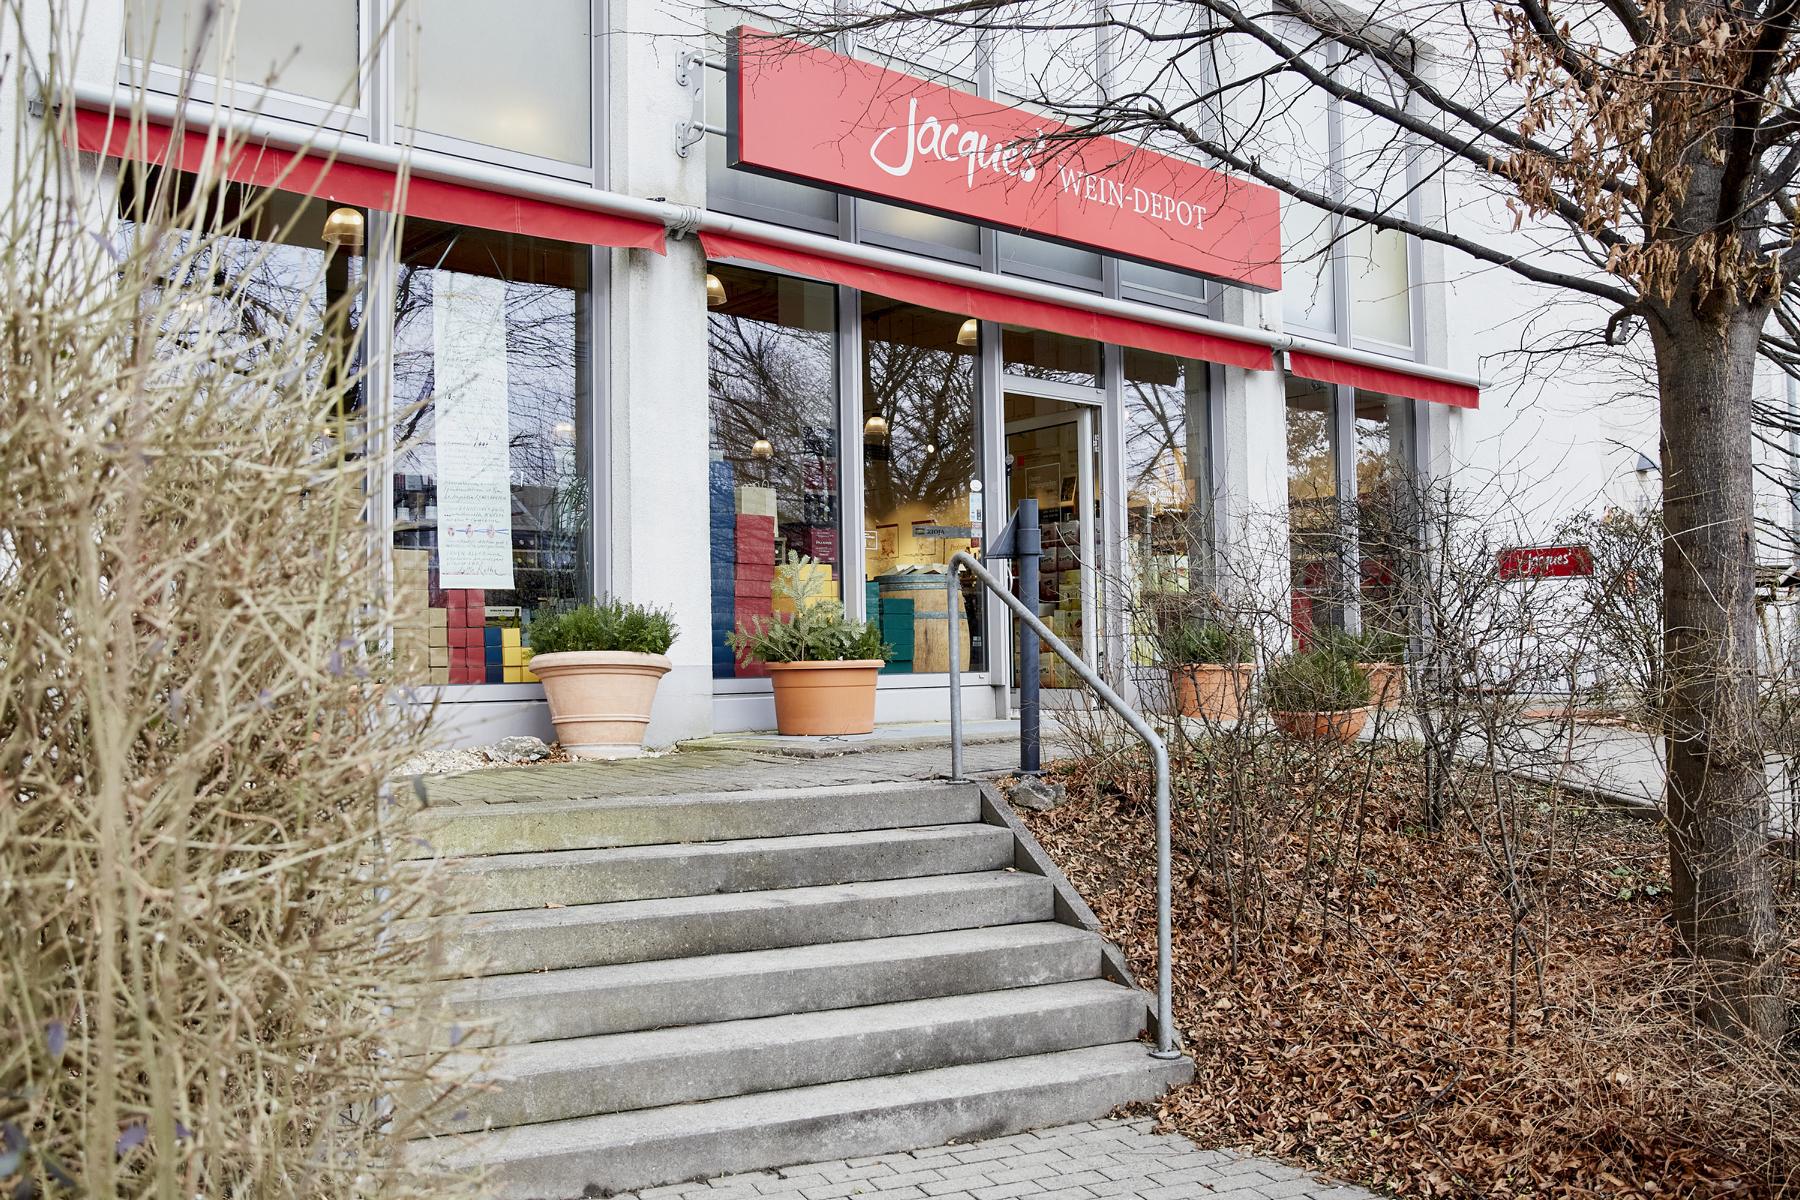 Bilder Jacques’ Wein-Depot Chemnitz